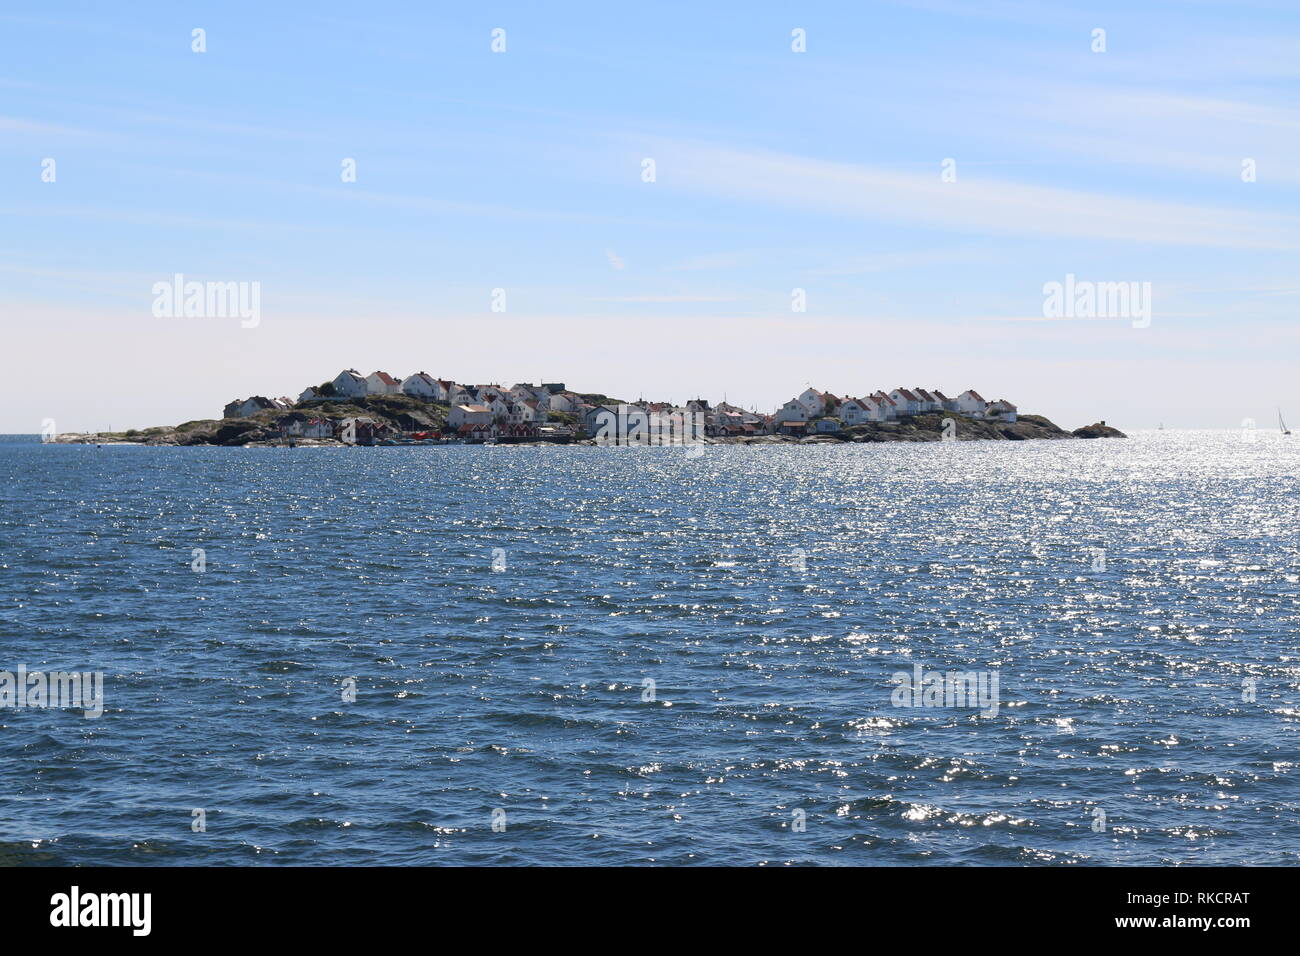 Die Insel Åstol an der Westküste Schwedens - Blick von der Fähre auf Åstol mit seinen Häusern und dem Naturhafen kleinen Foto Stock